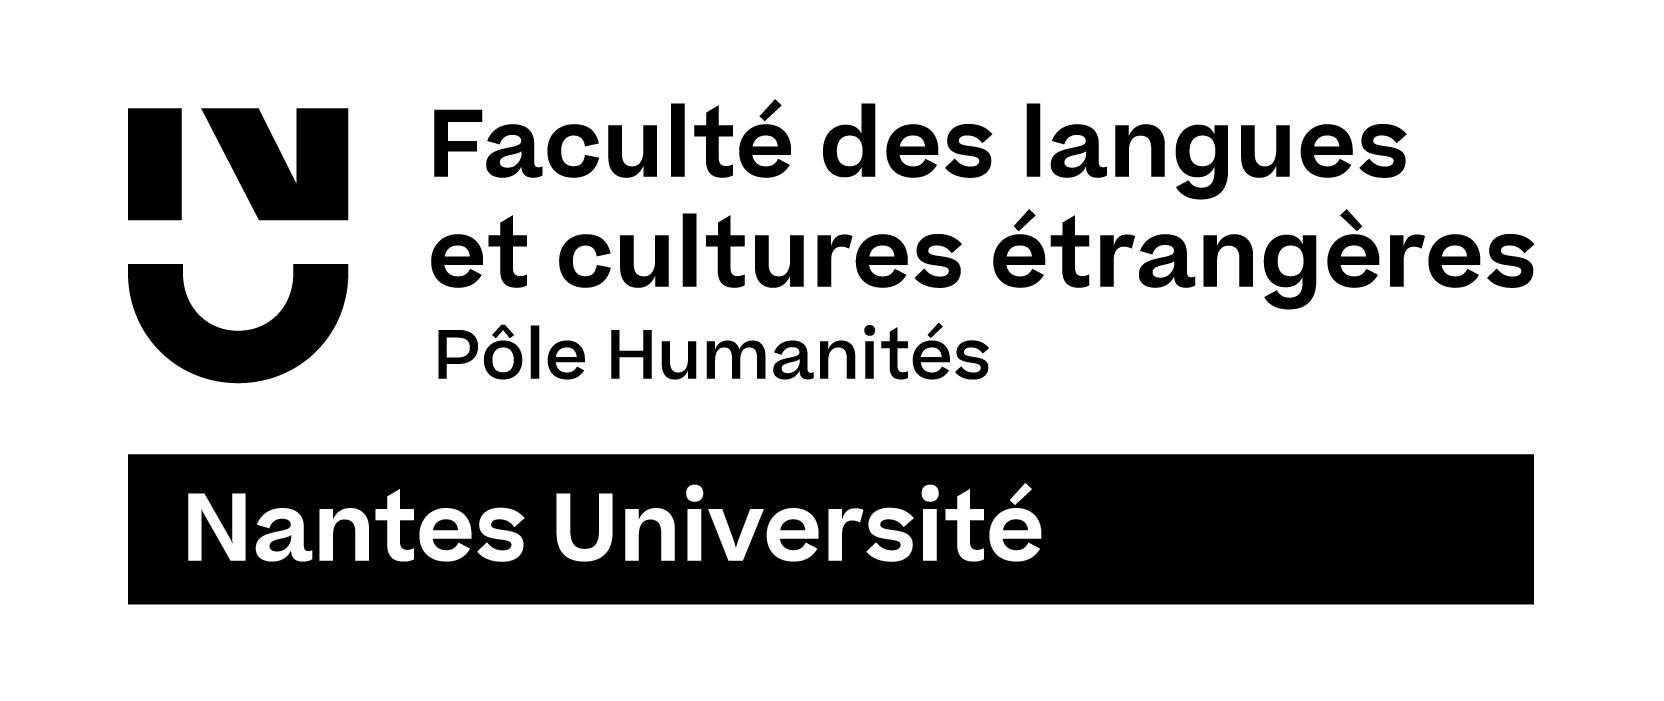 Faculté des Langues et Cultures Étrangères de l'Université de Nantes